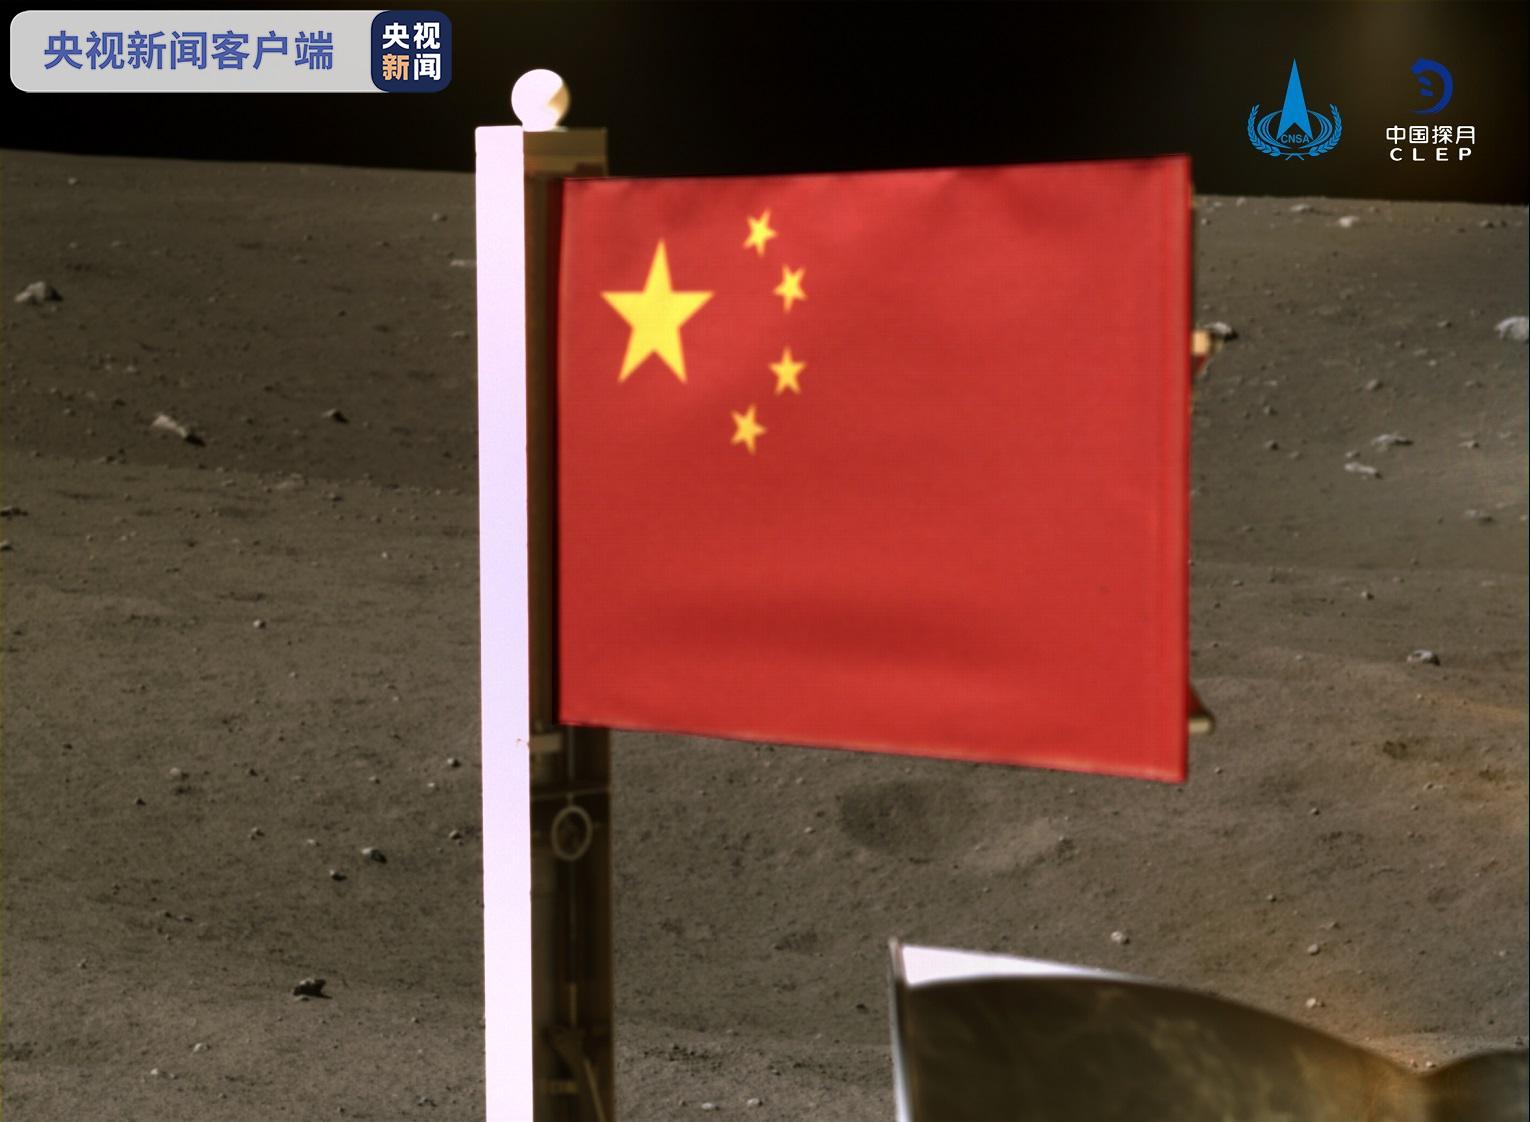 国家航天局公布嫦娥五号月表国旗展示照片